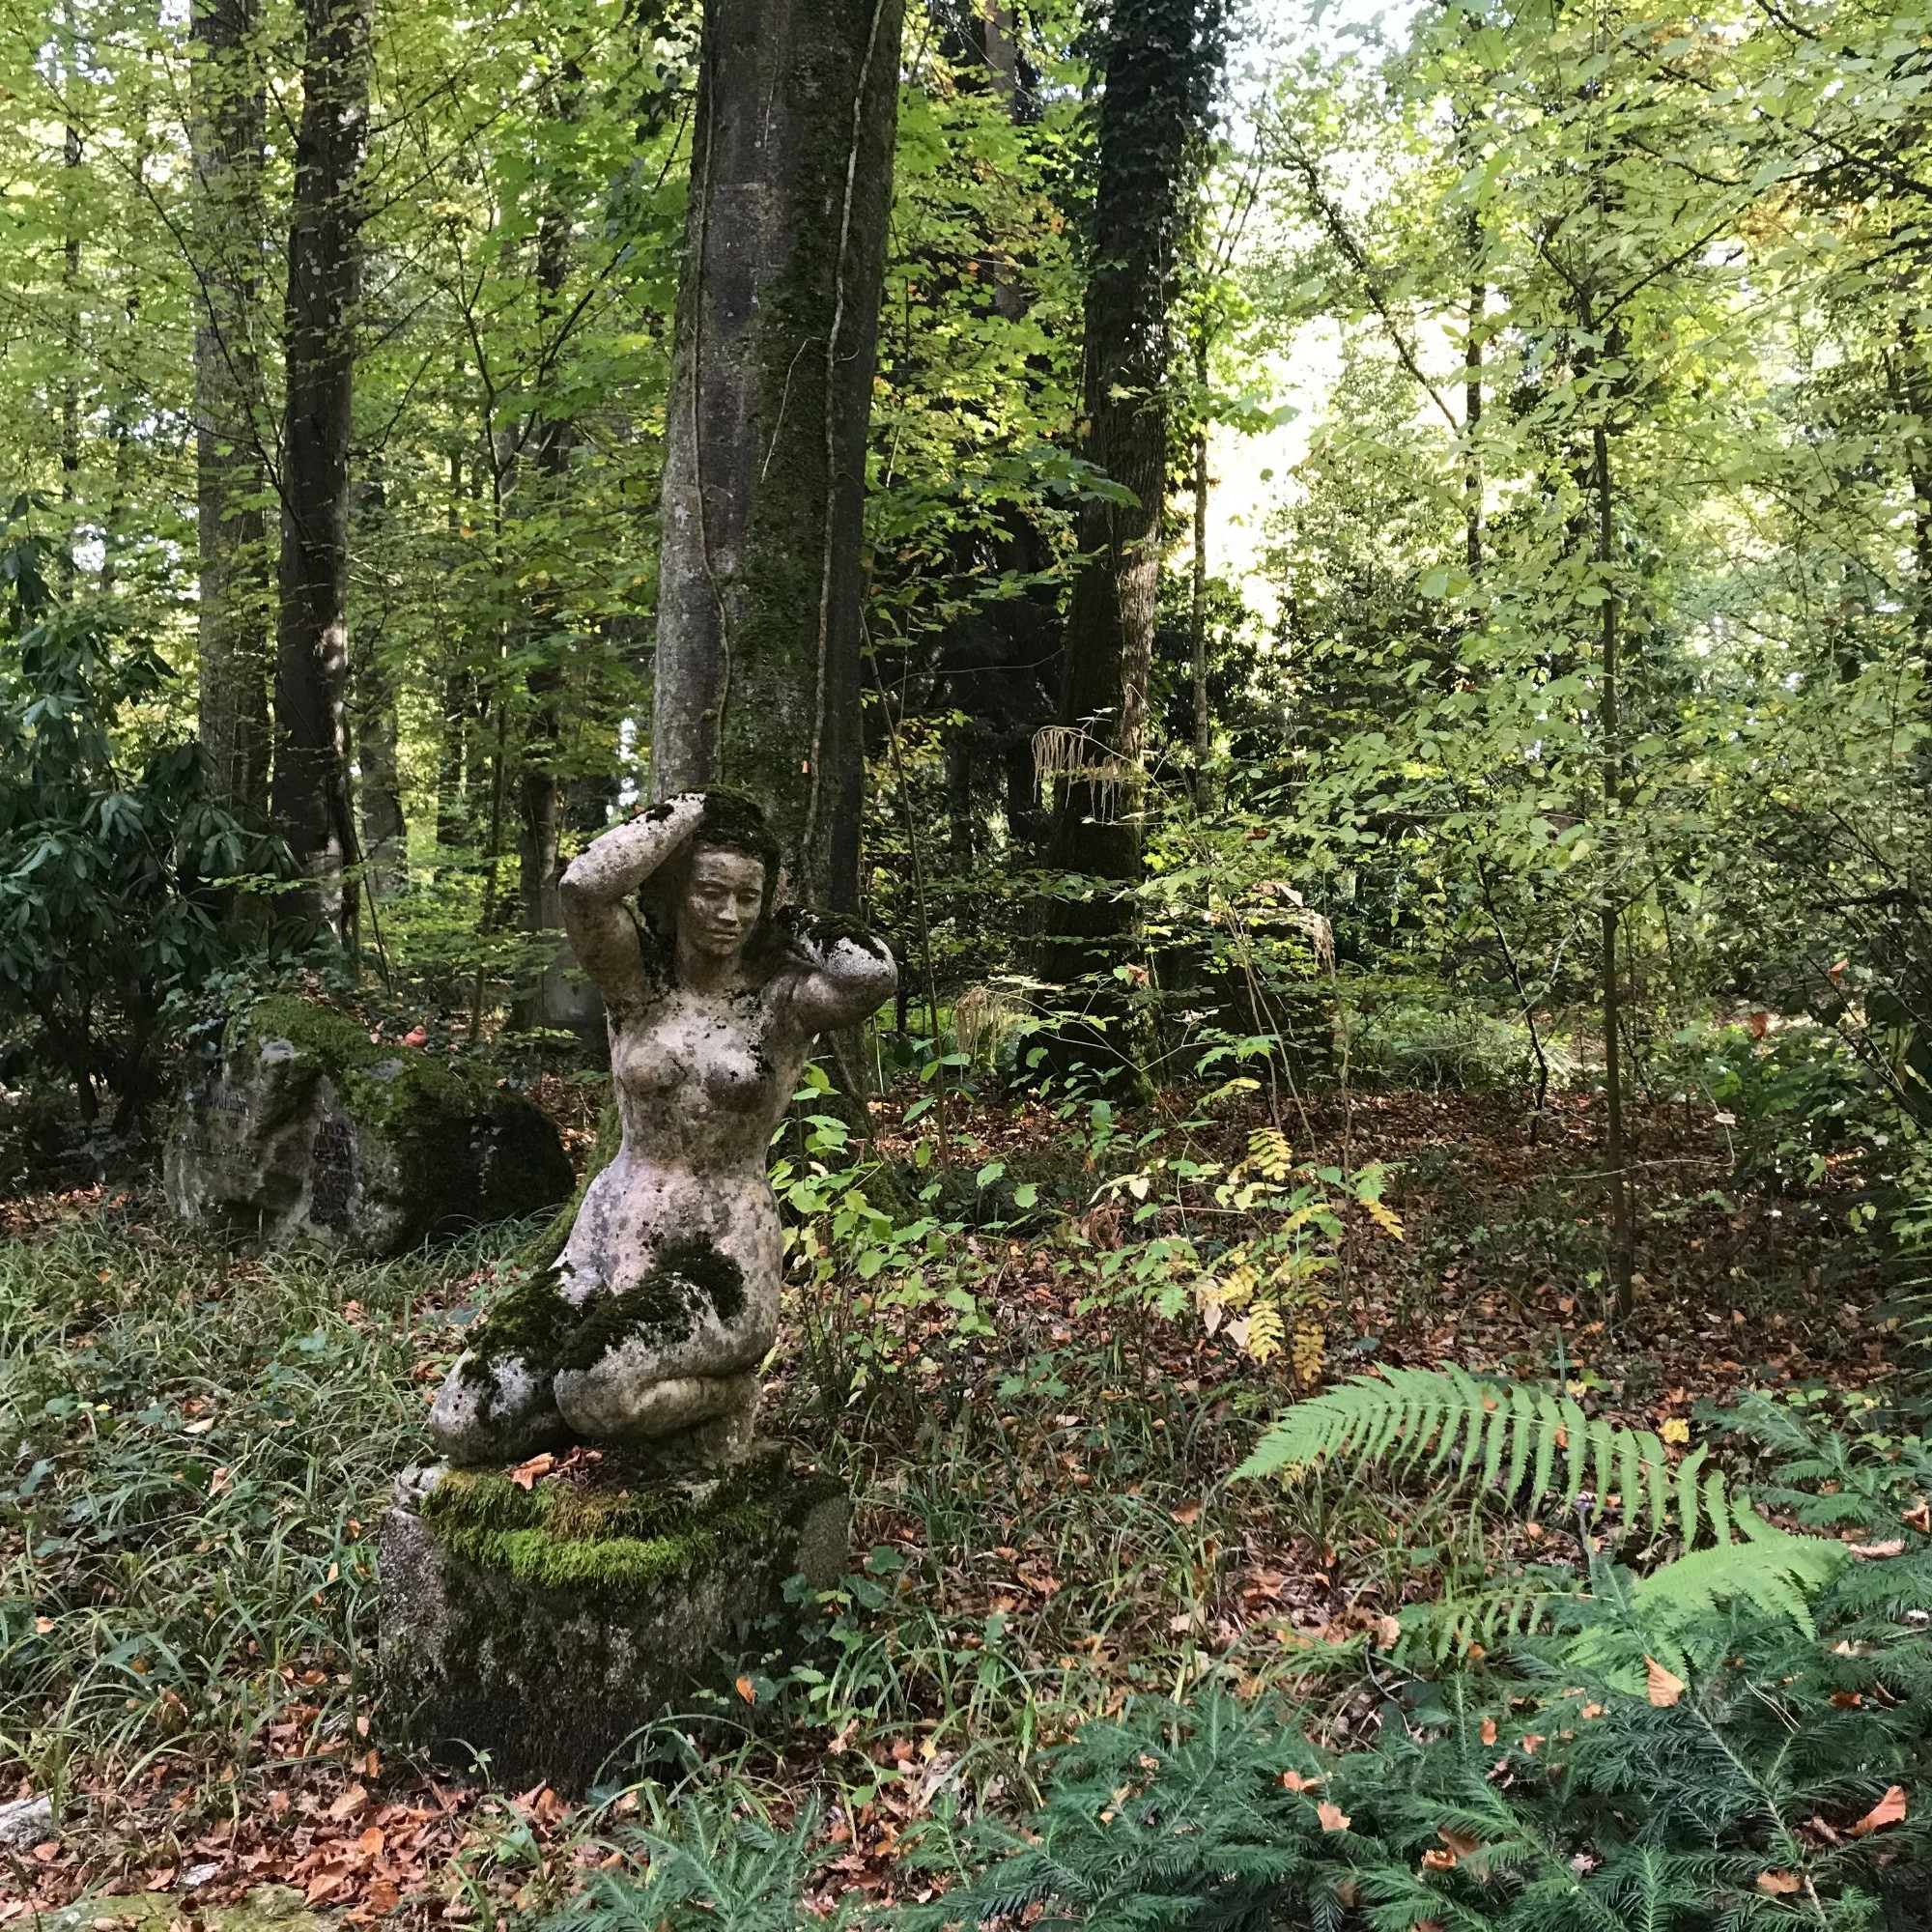 Verteilt auf den ganzen Waldfriedhof, finden sich Kunstwerke aller Art. So wie diese Skulptur, die teilweise von Moos bedeckt ist.